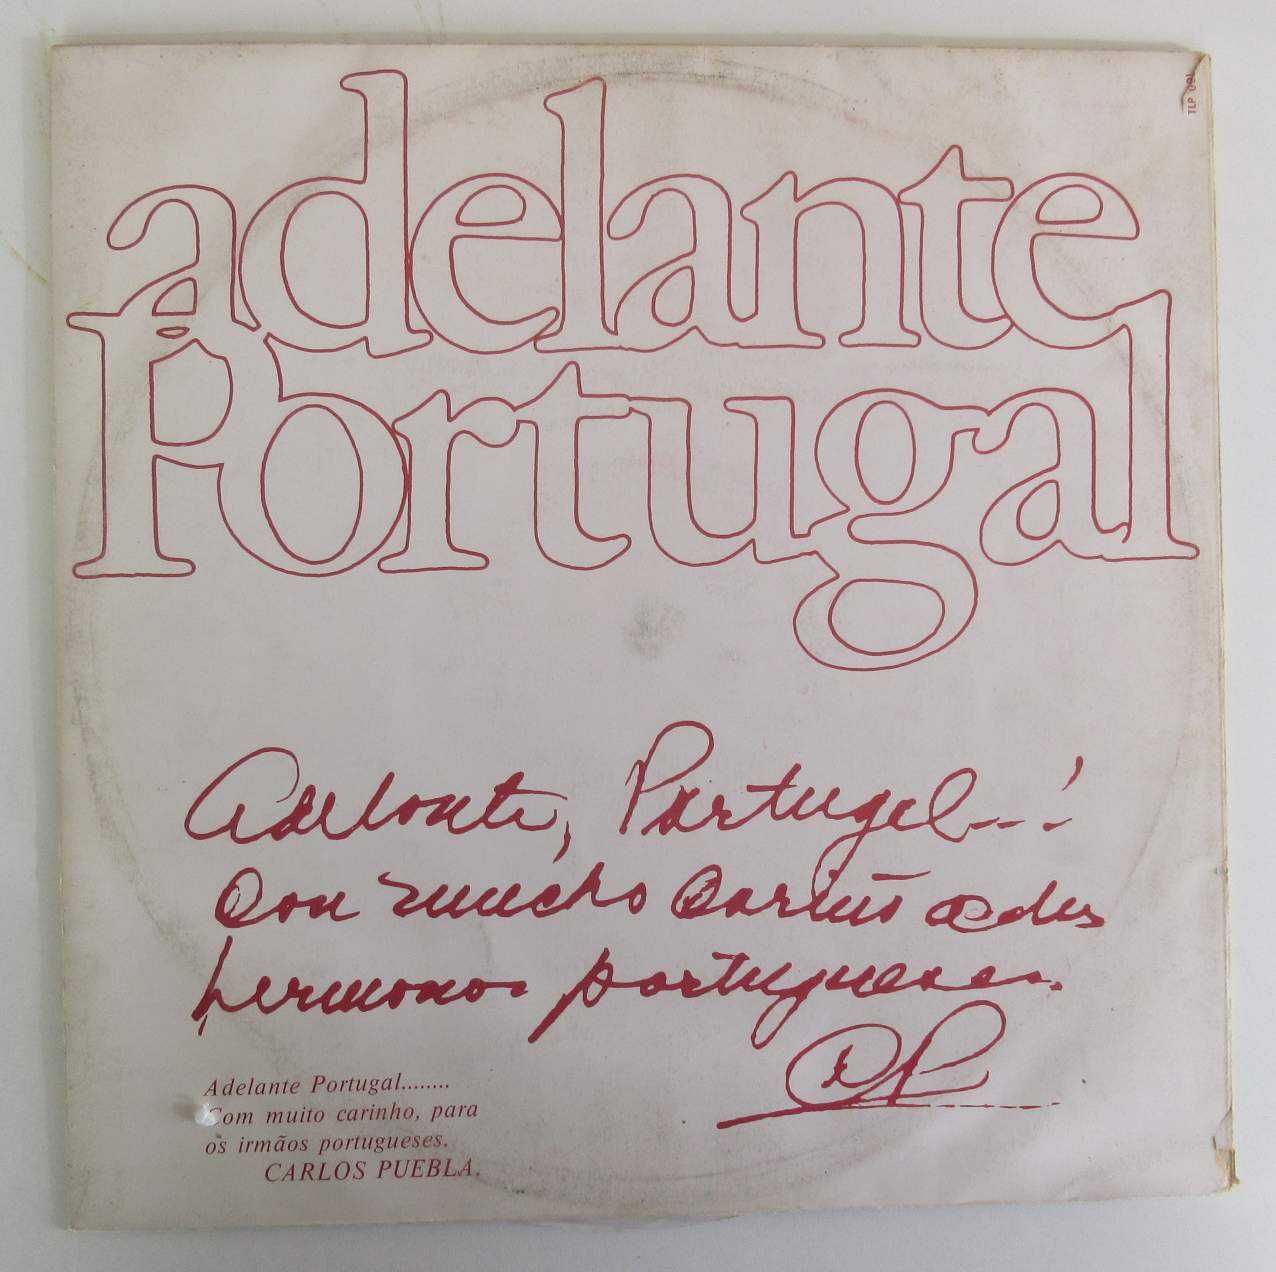 CARLOS PUEBLA - Adelante Portugal (LP)